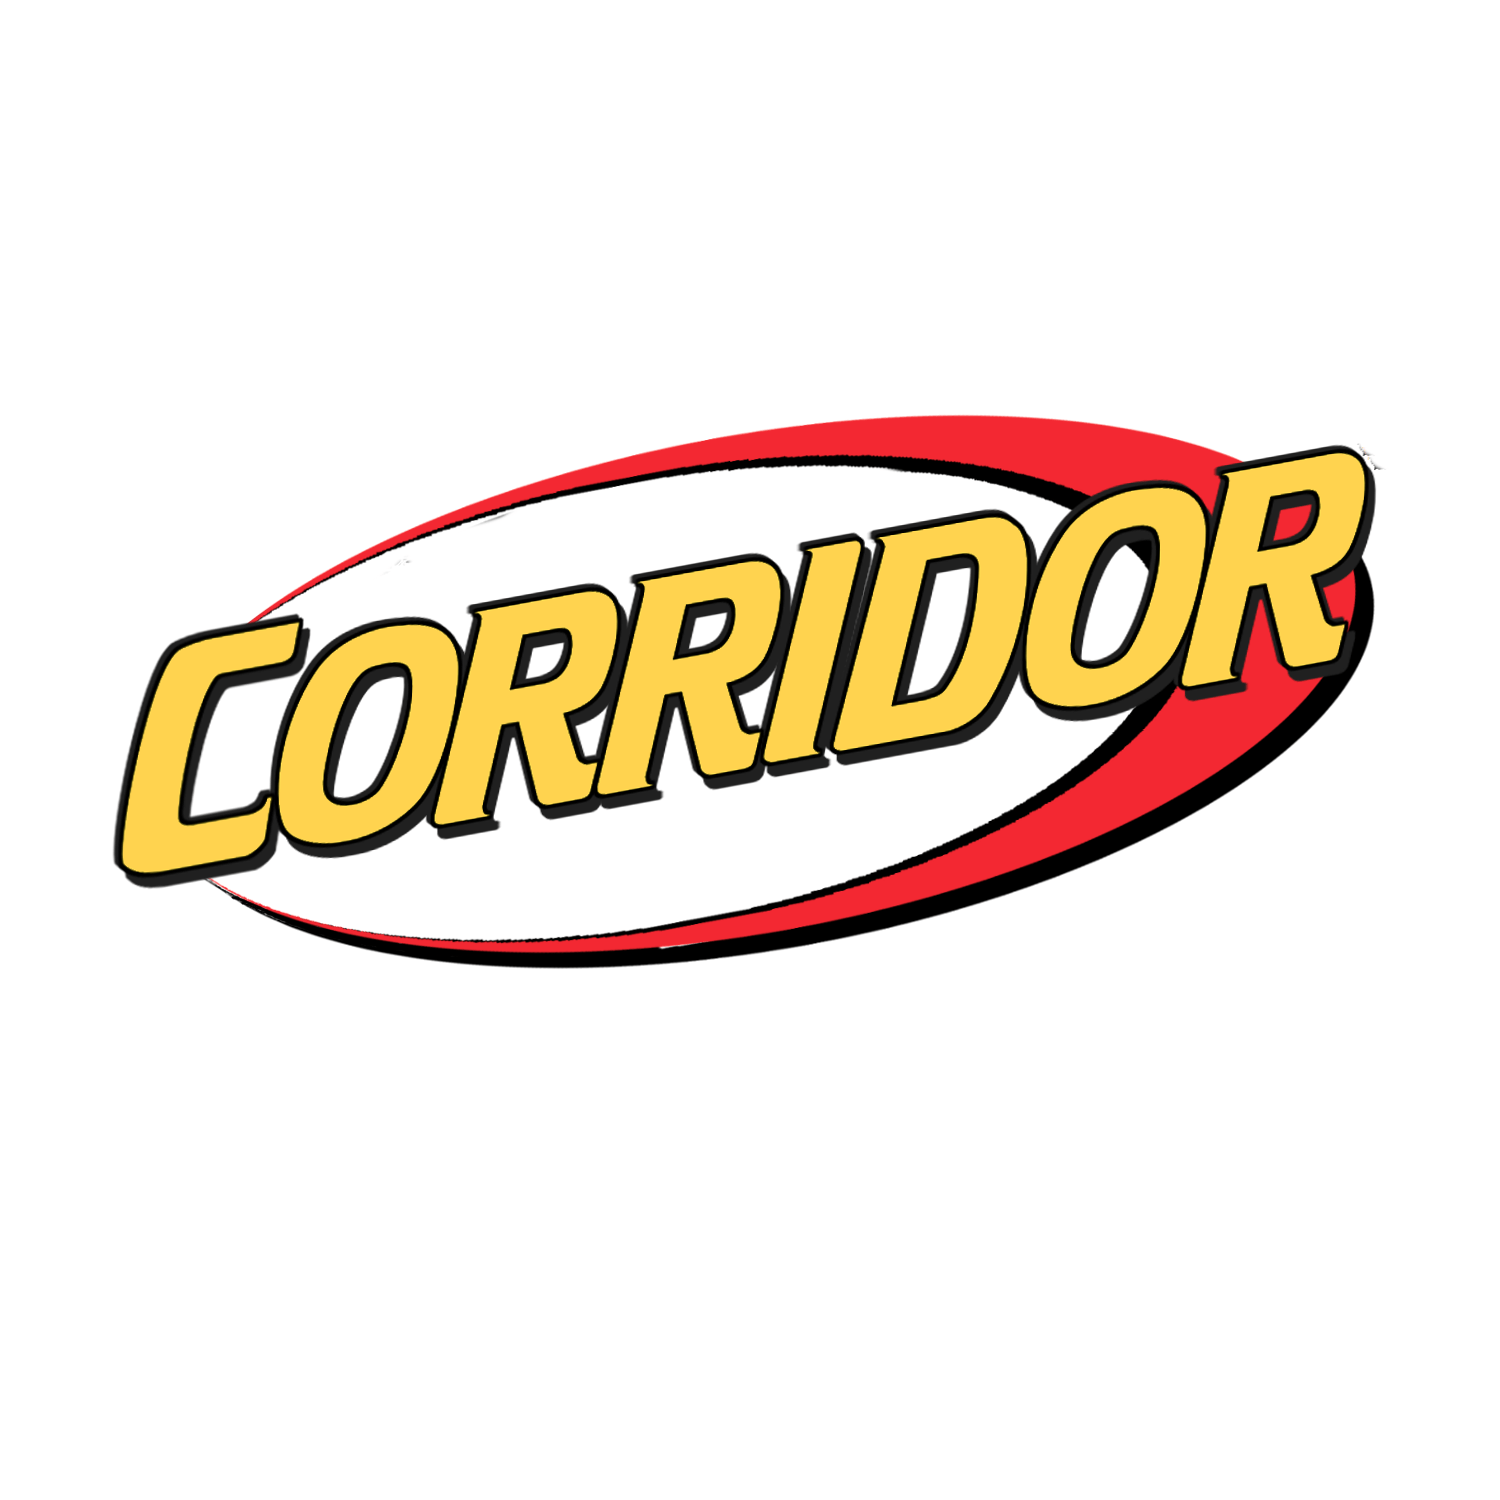 Nerf Logo - Modern Nerf Logo Style : Corridor